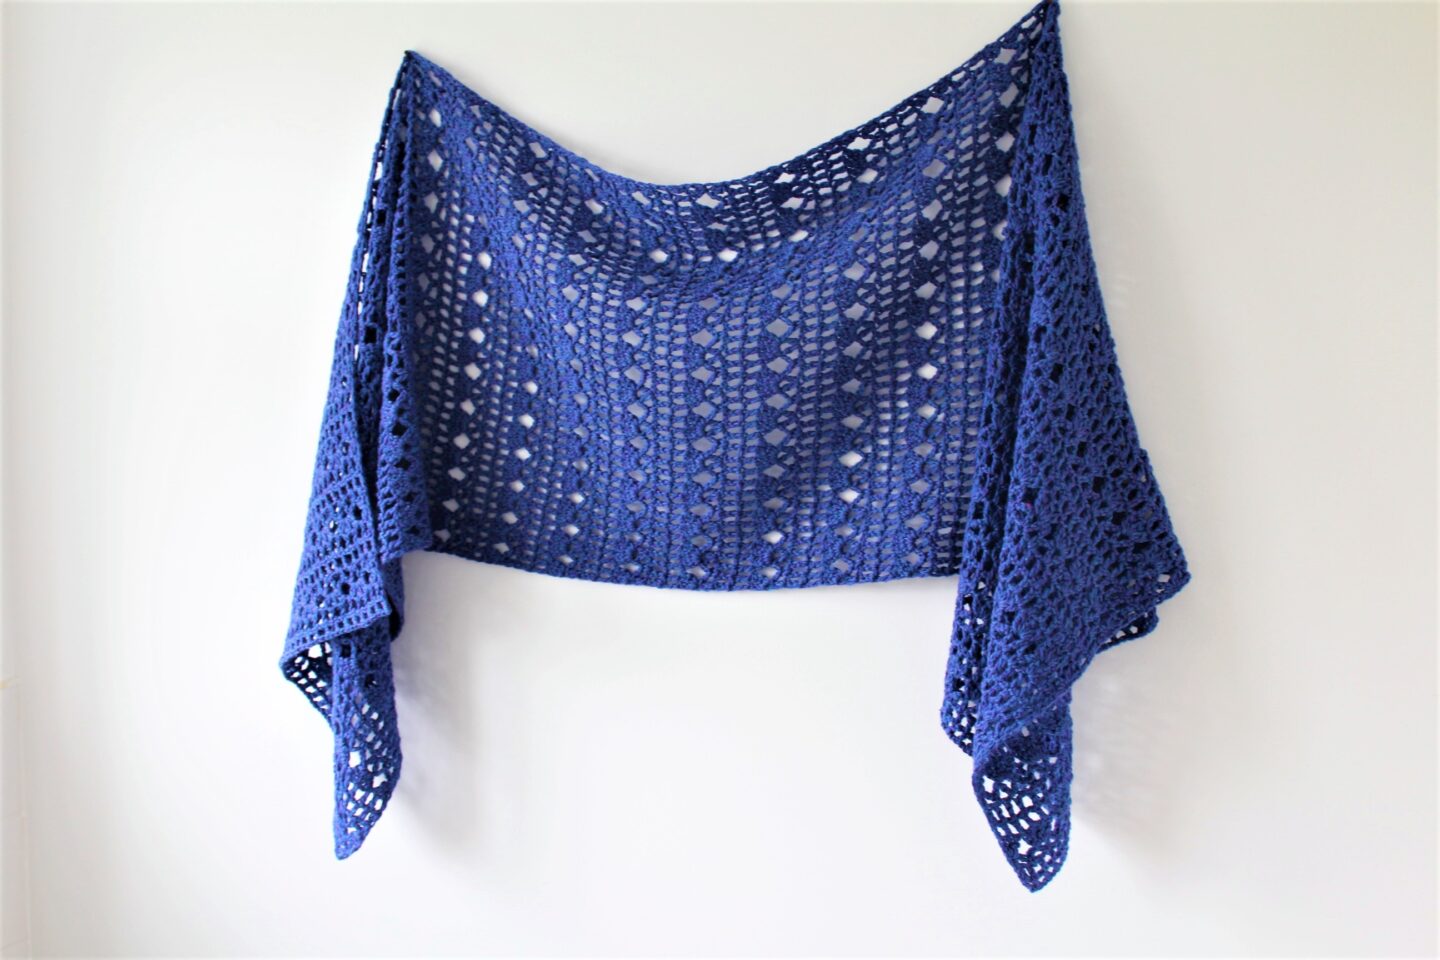 Wren Sideways Shawl - Free Crochet Pattern